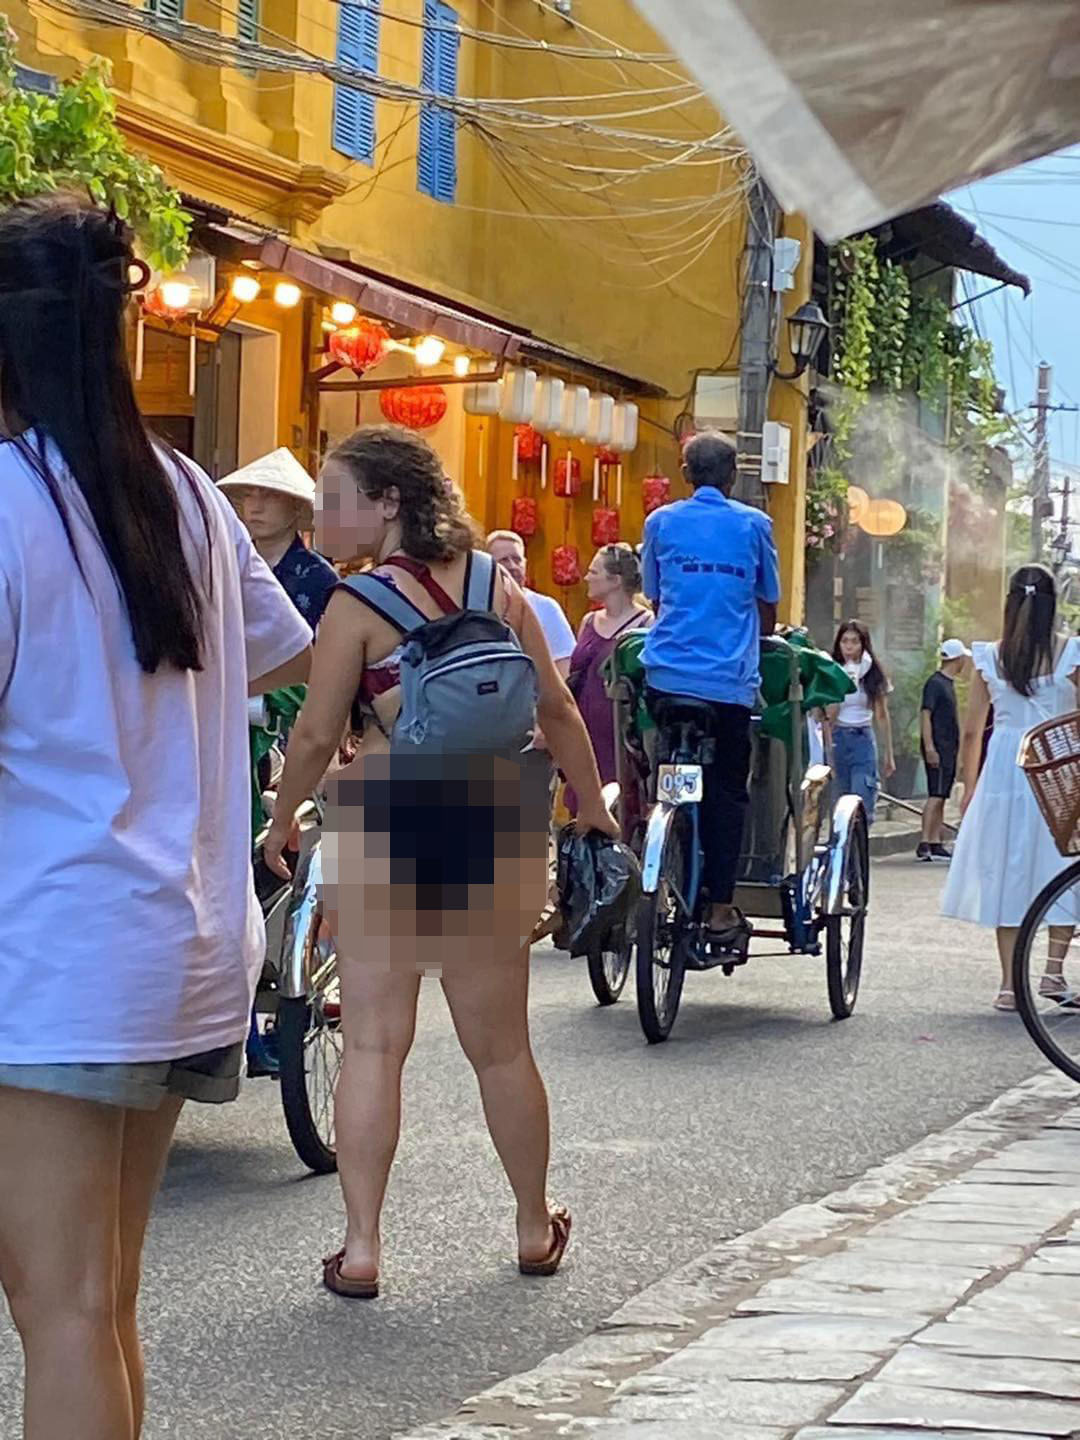 Nữ du khách nước ngoài vô tư mặc bikini để dạo phố cổ Hội An. Nhiều người cho rằng, hình ảnh này không phù hợp với 1 nơi như phố cổ